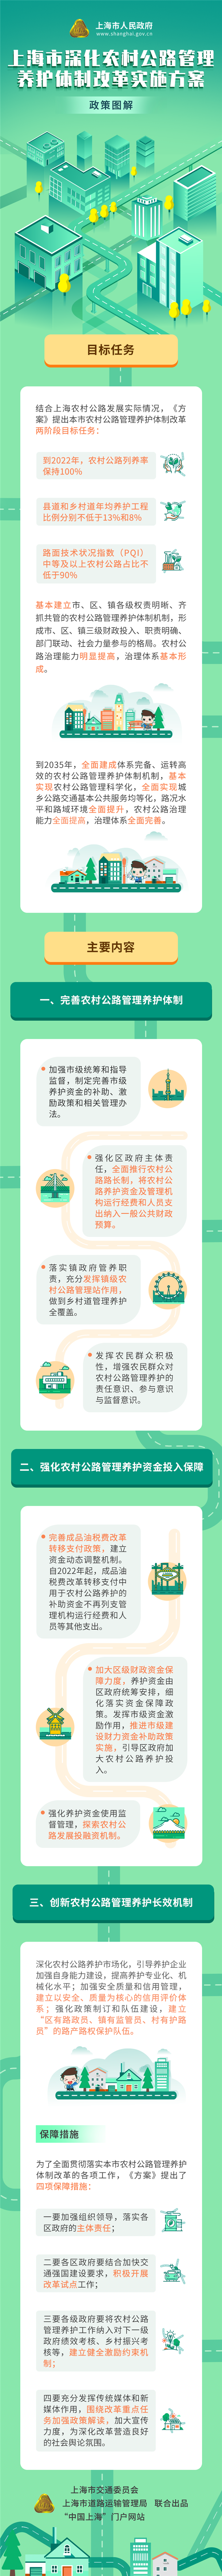 《上海市深化农村公路管理养护体制改革实施方案》政策图解